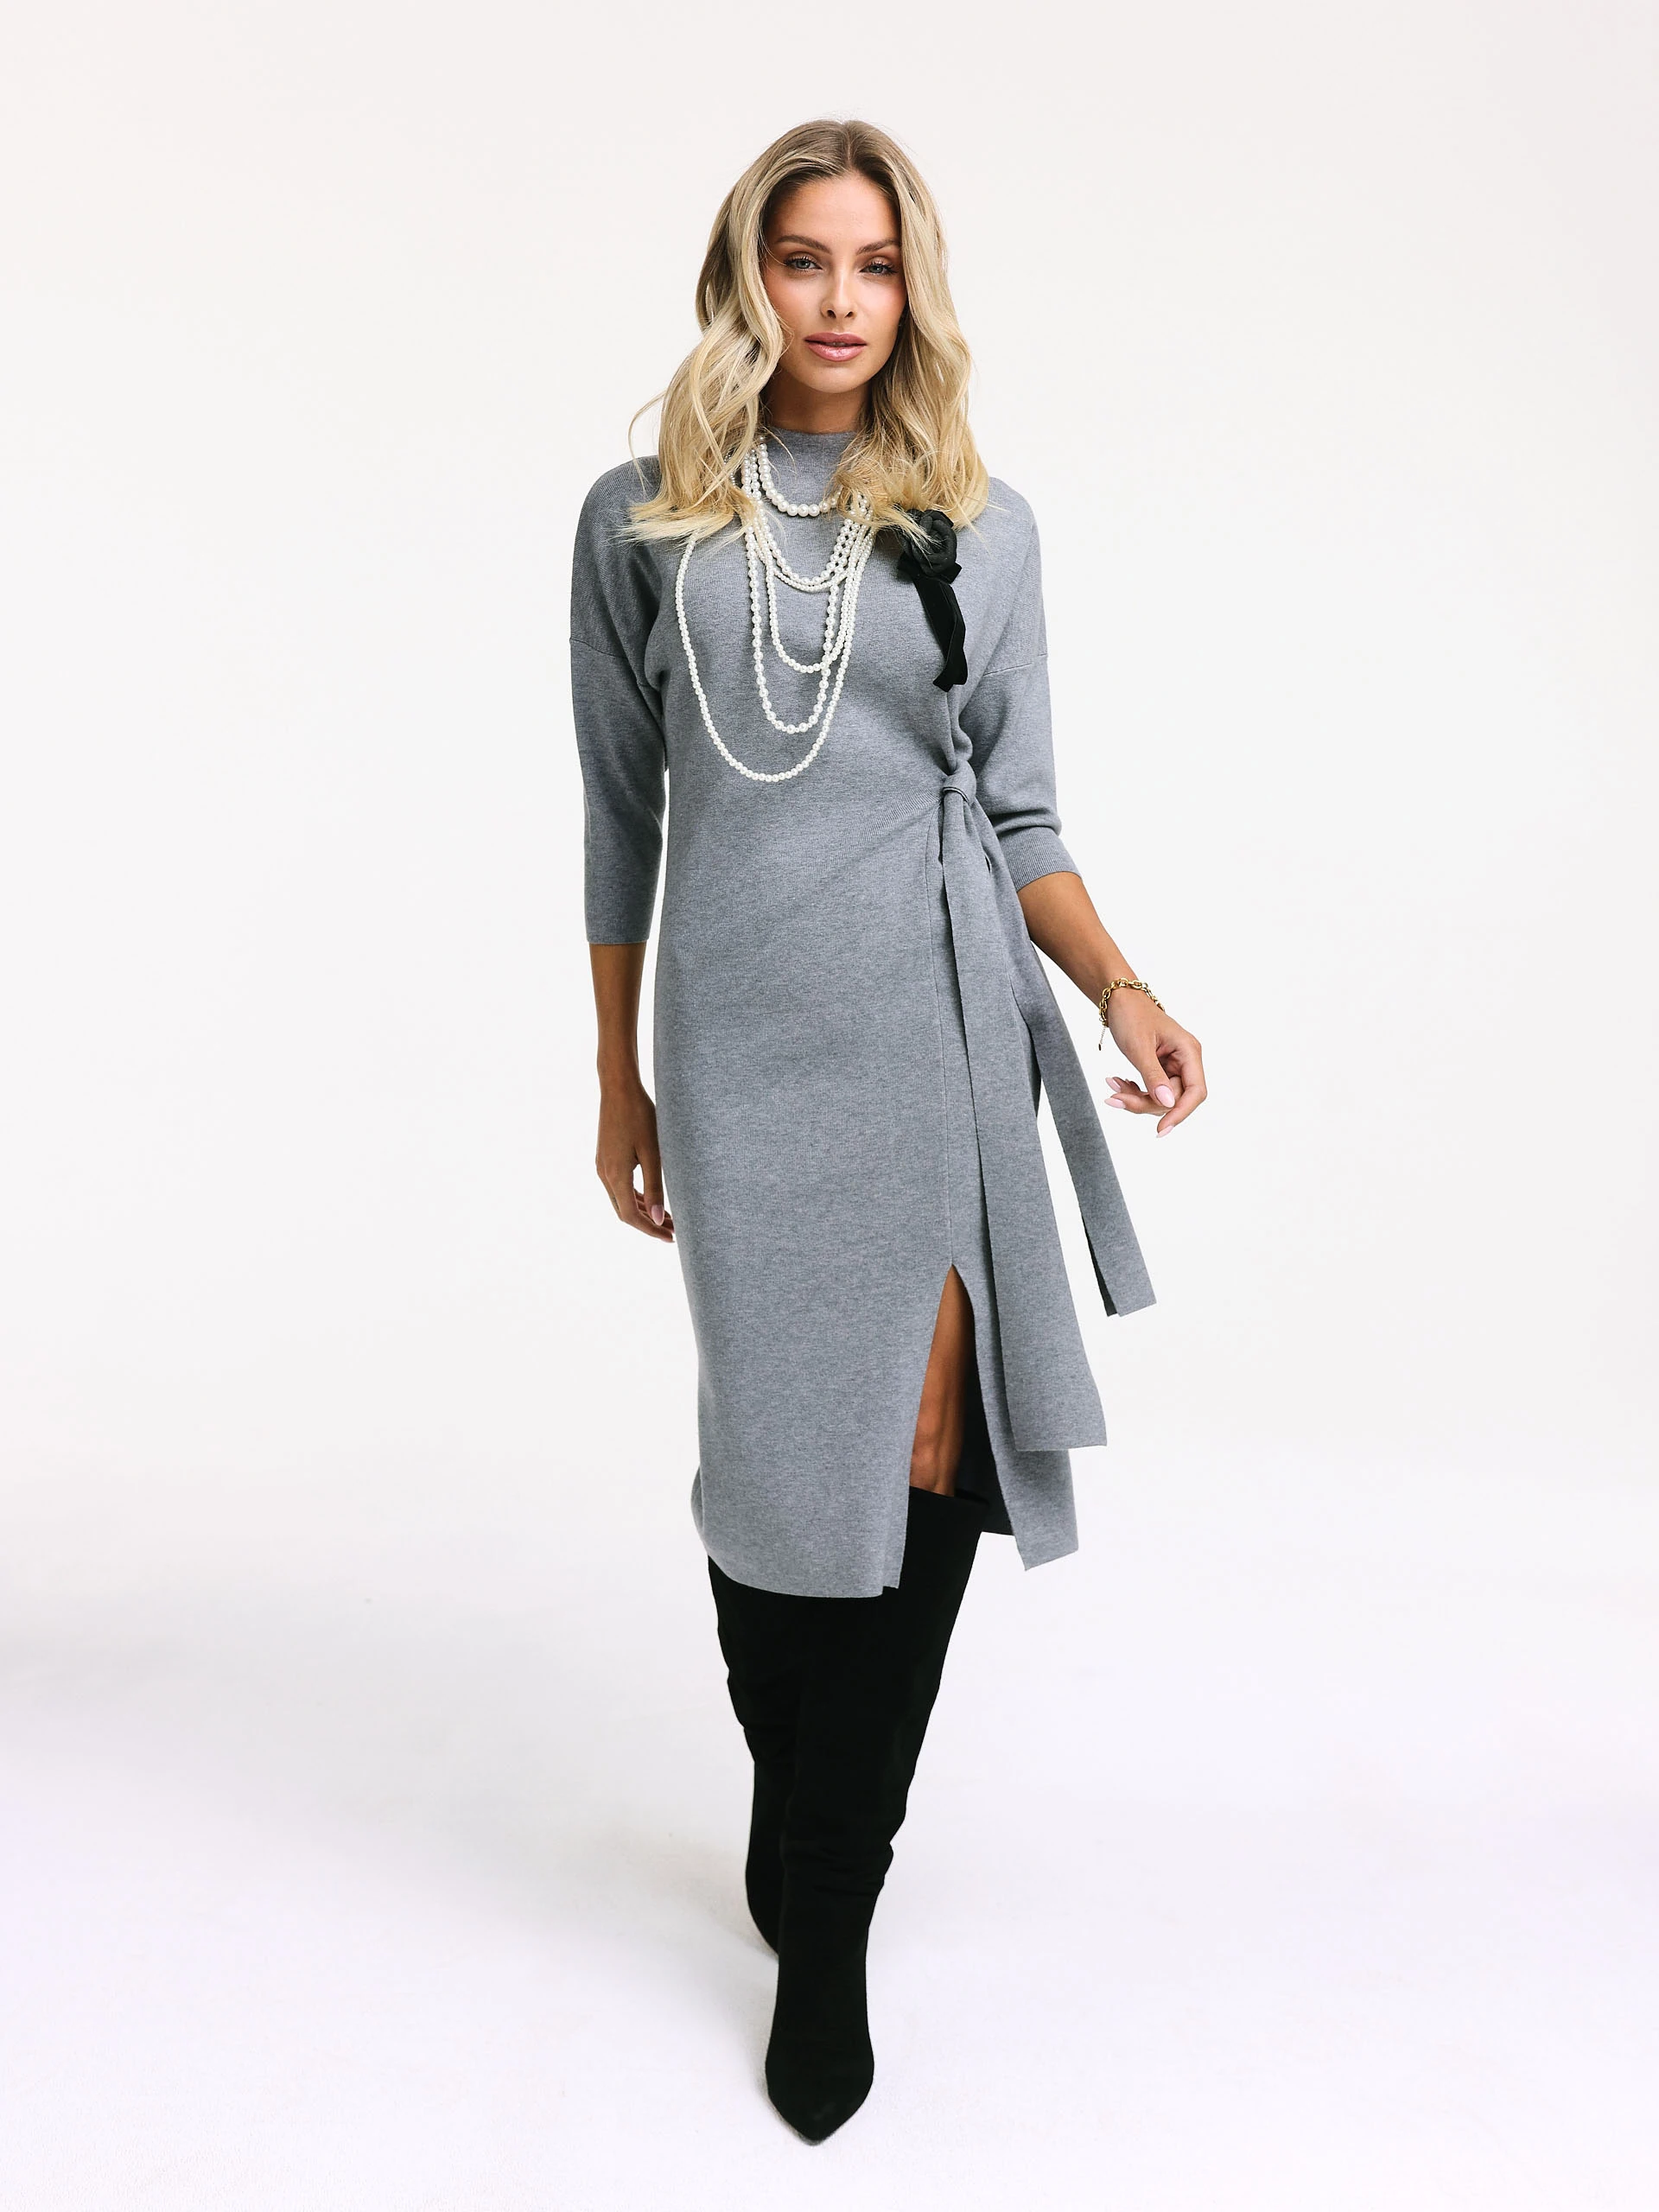 Grey knit dress with slit